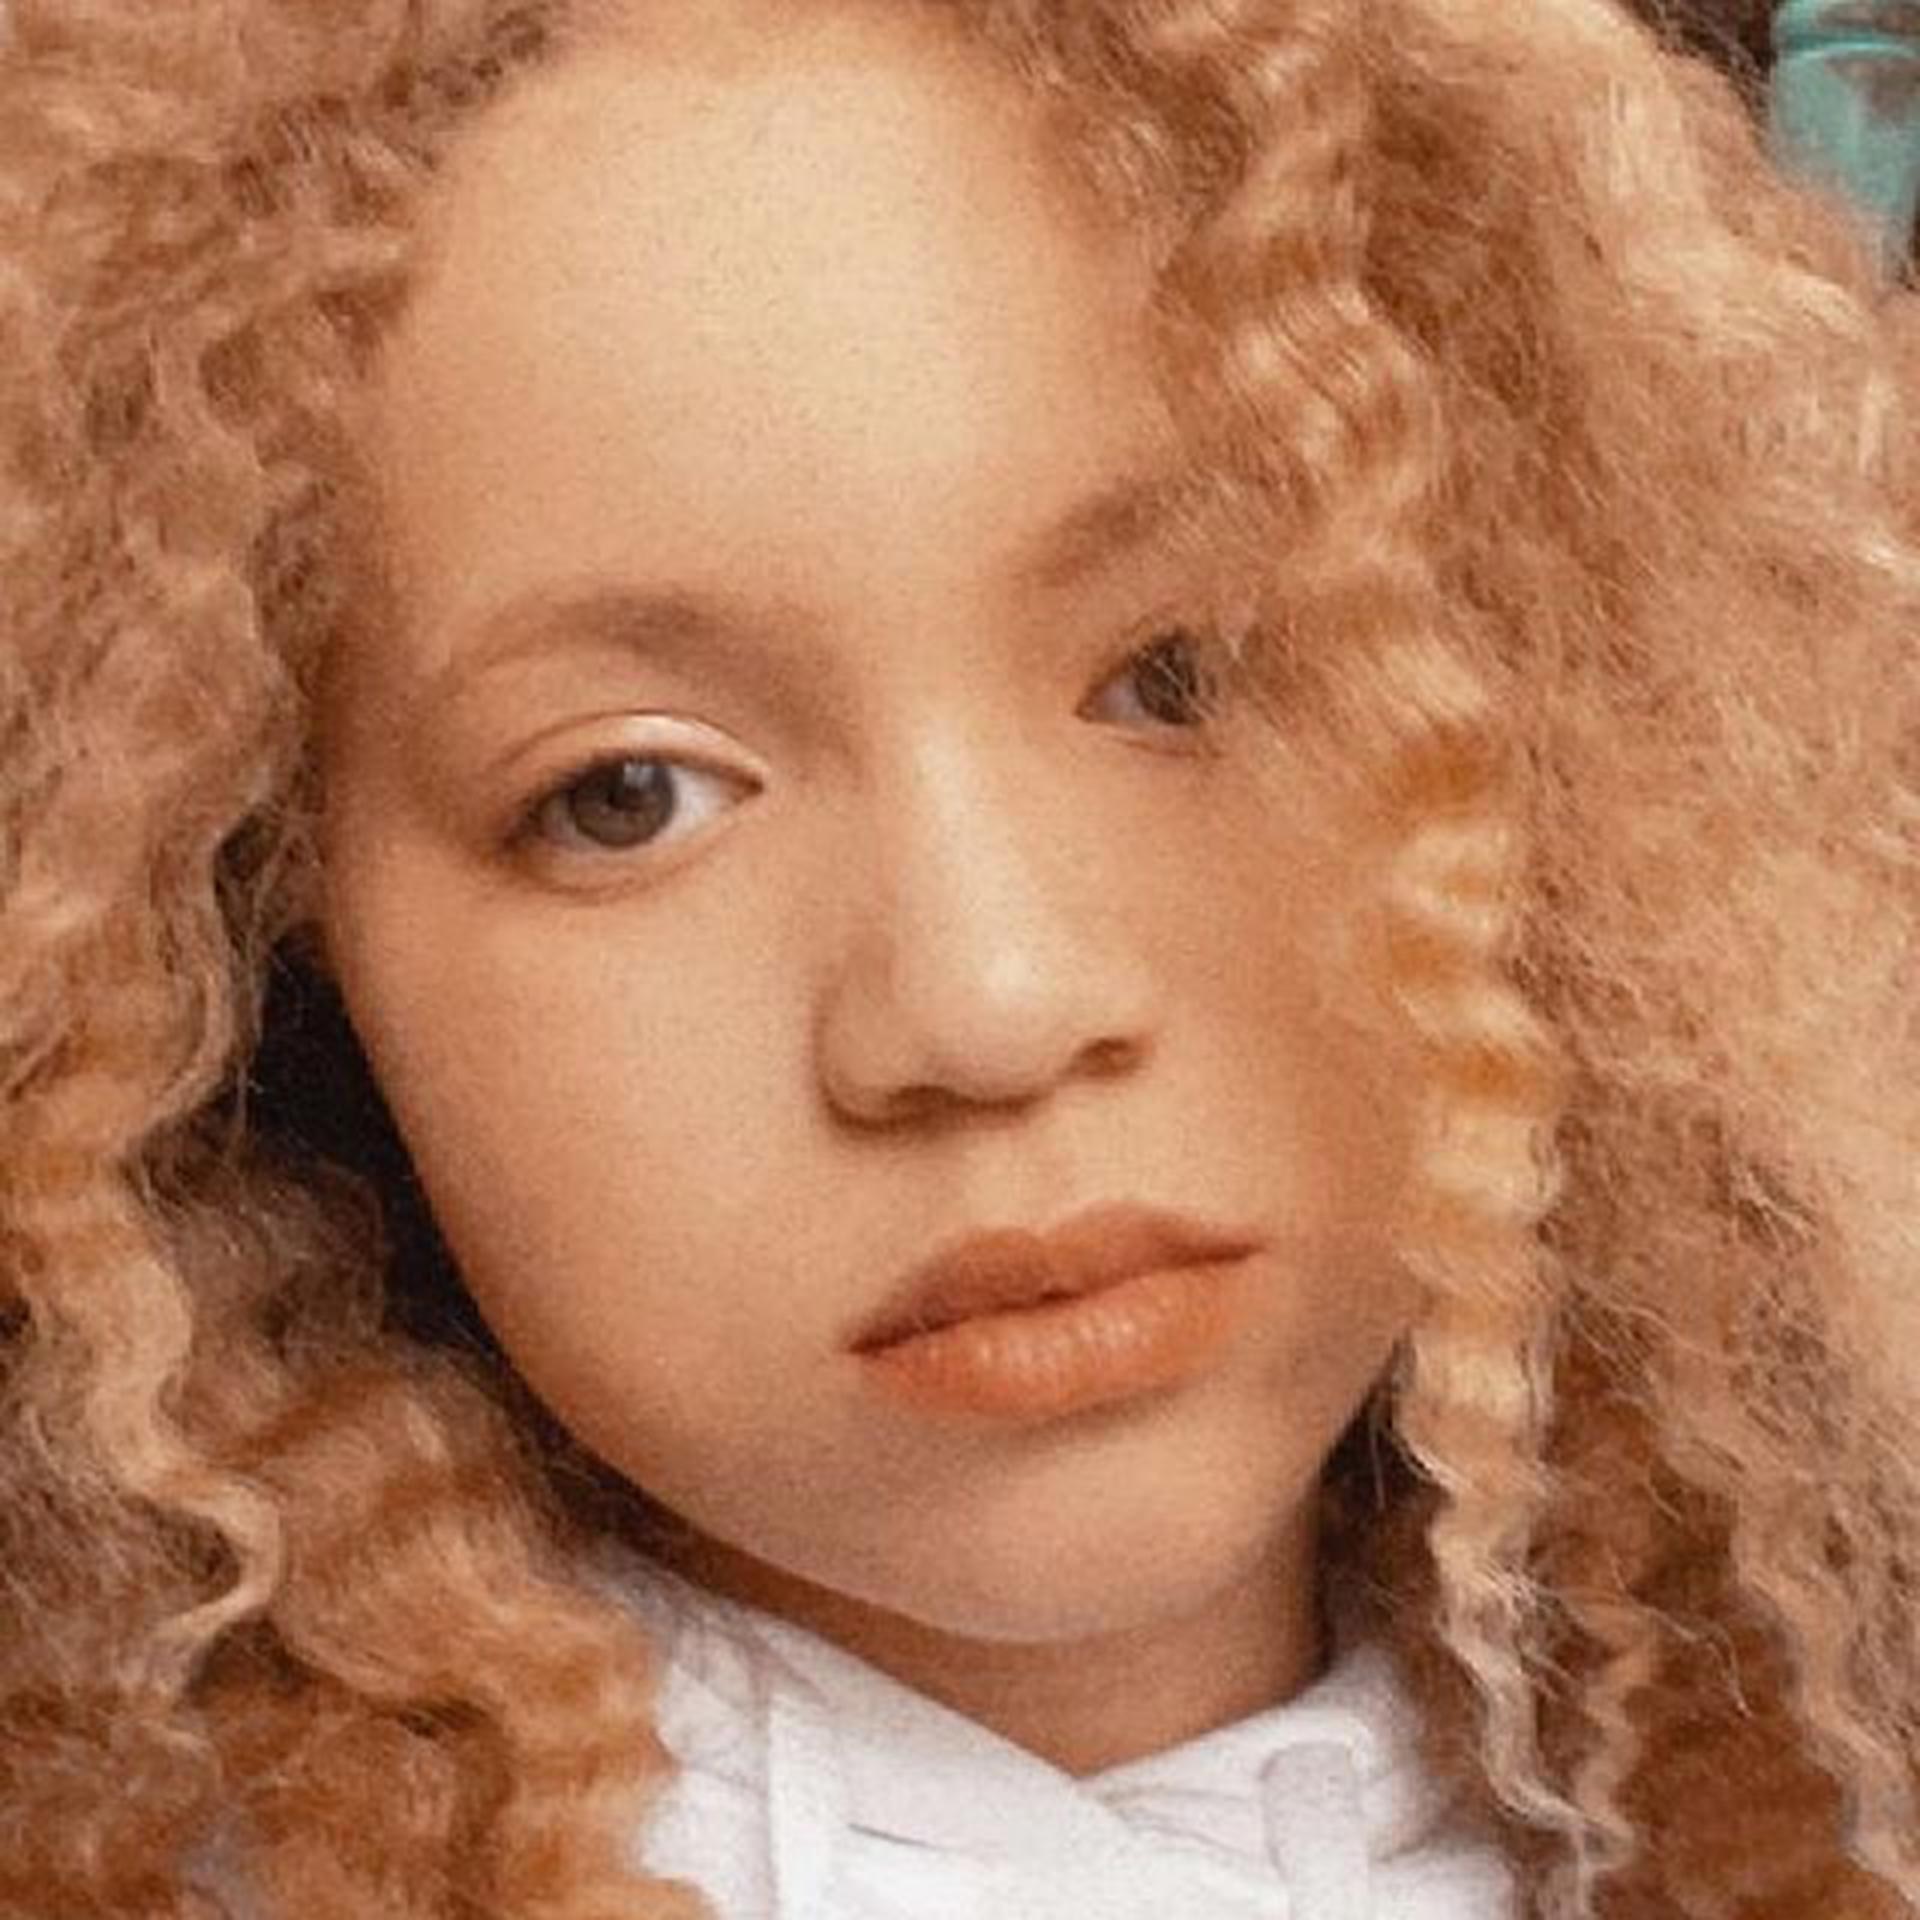 La pequeña Ava Clarke es afroamericana y llegó al modelaje gracias al albinismo a los 8 años